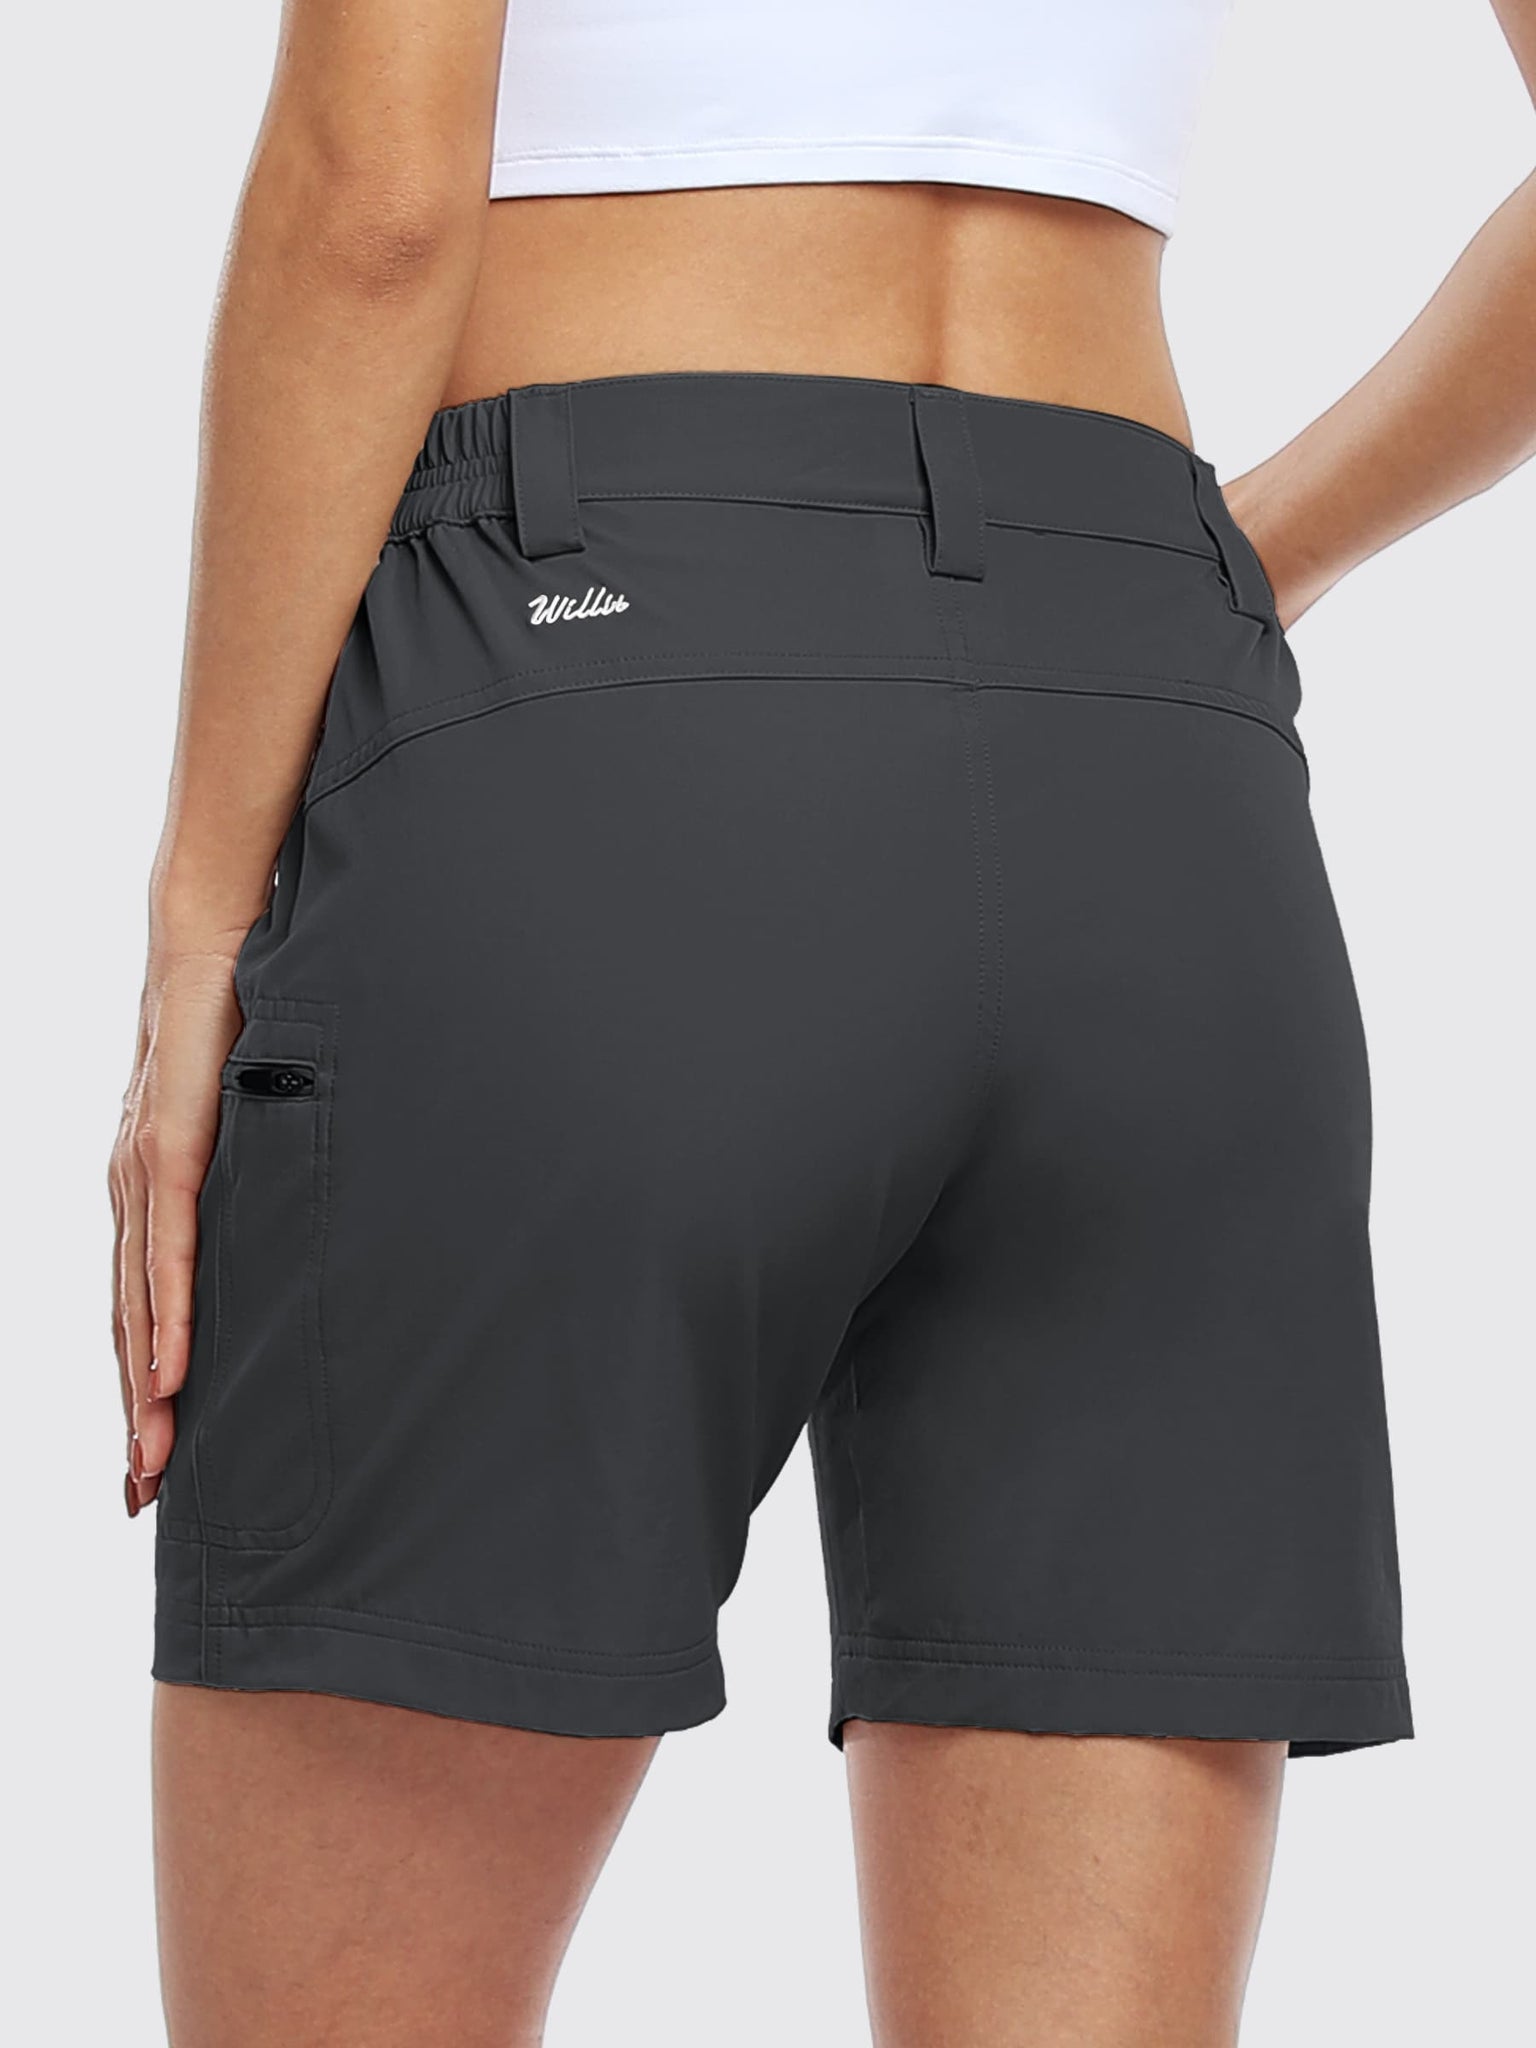 Willit Women's Outdoor Cargo Shorts 6 Inseam_DeepGray_model5